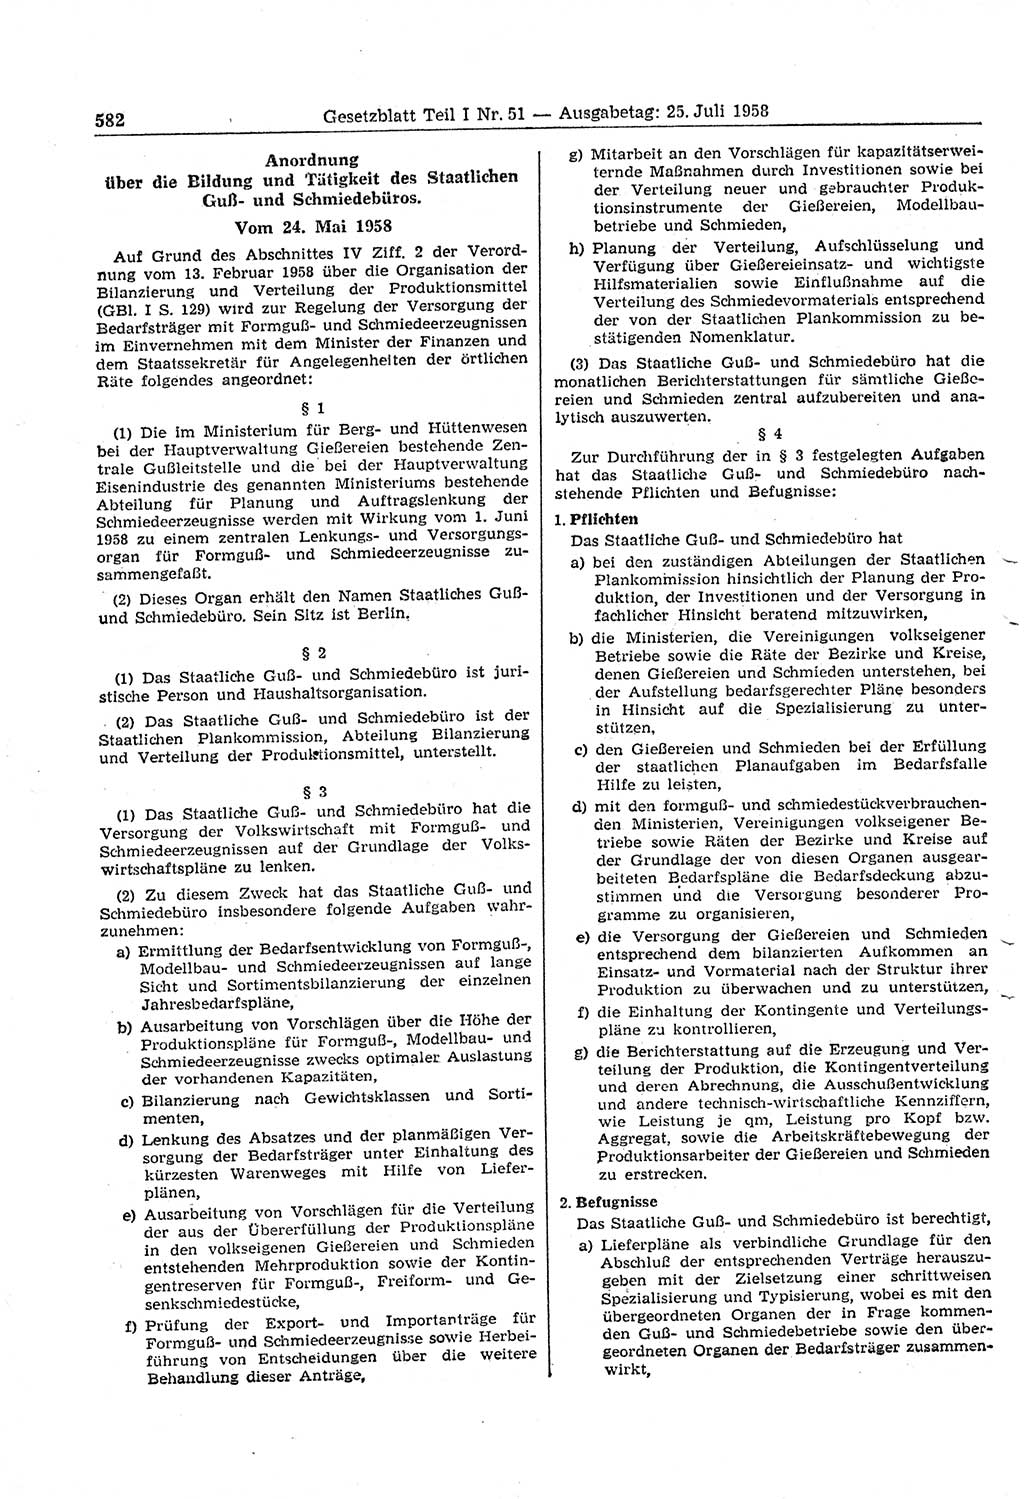 Gesetzblatt (GBl.) der Deutschen Demokratischen Republik (DDR) Teil Ⅰ 1958, Seite 582 (GBl. DDR Ⅰ 1958, S. 582)